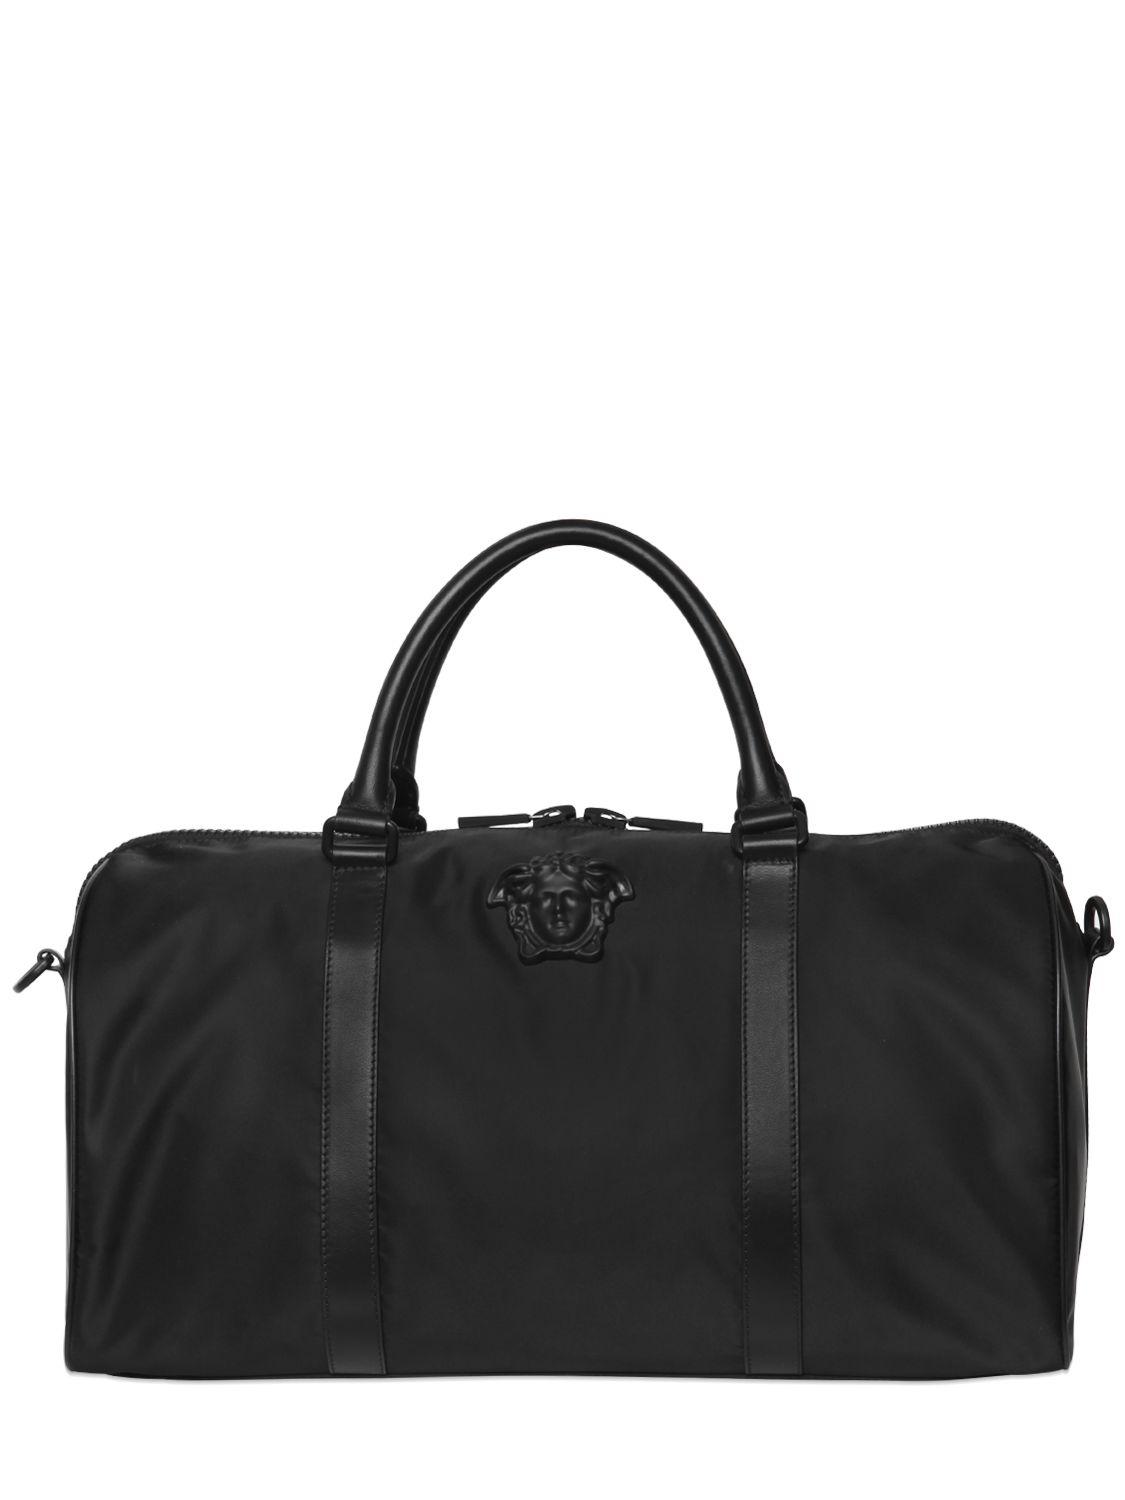 Lyst - Versace Medusa Nylon Duffle Bag in Black for Men